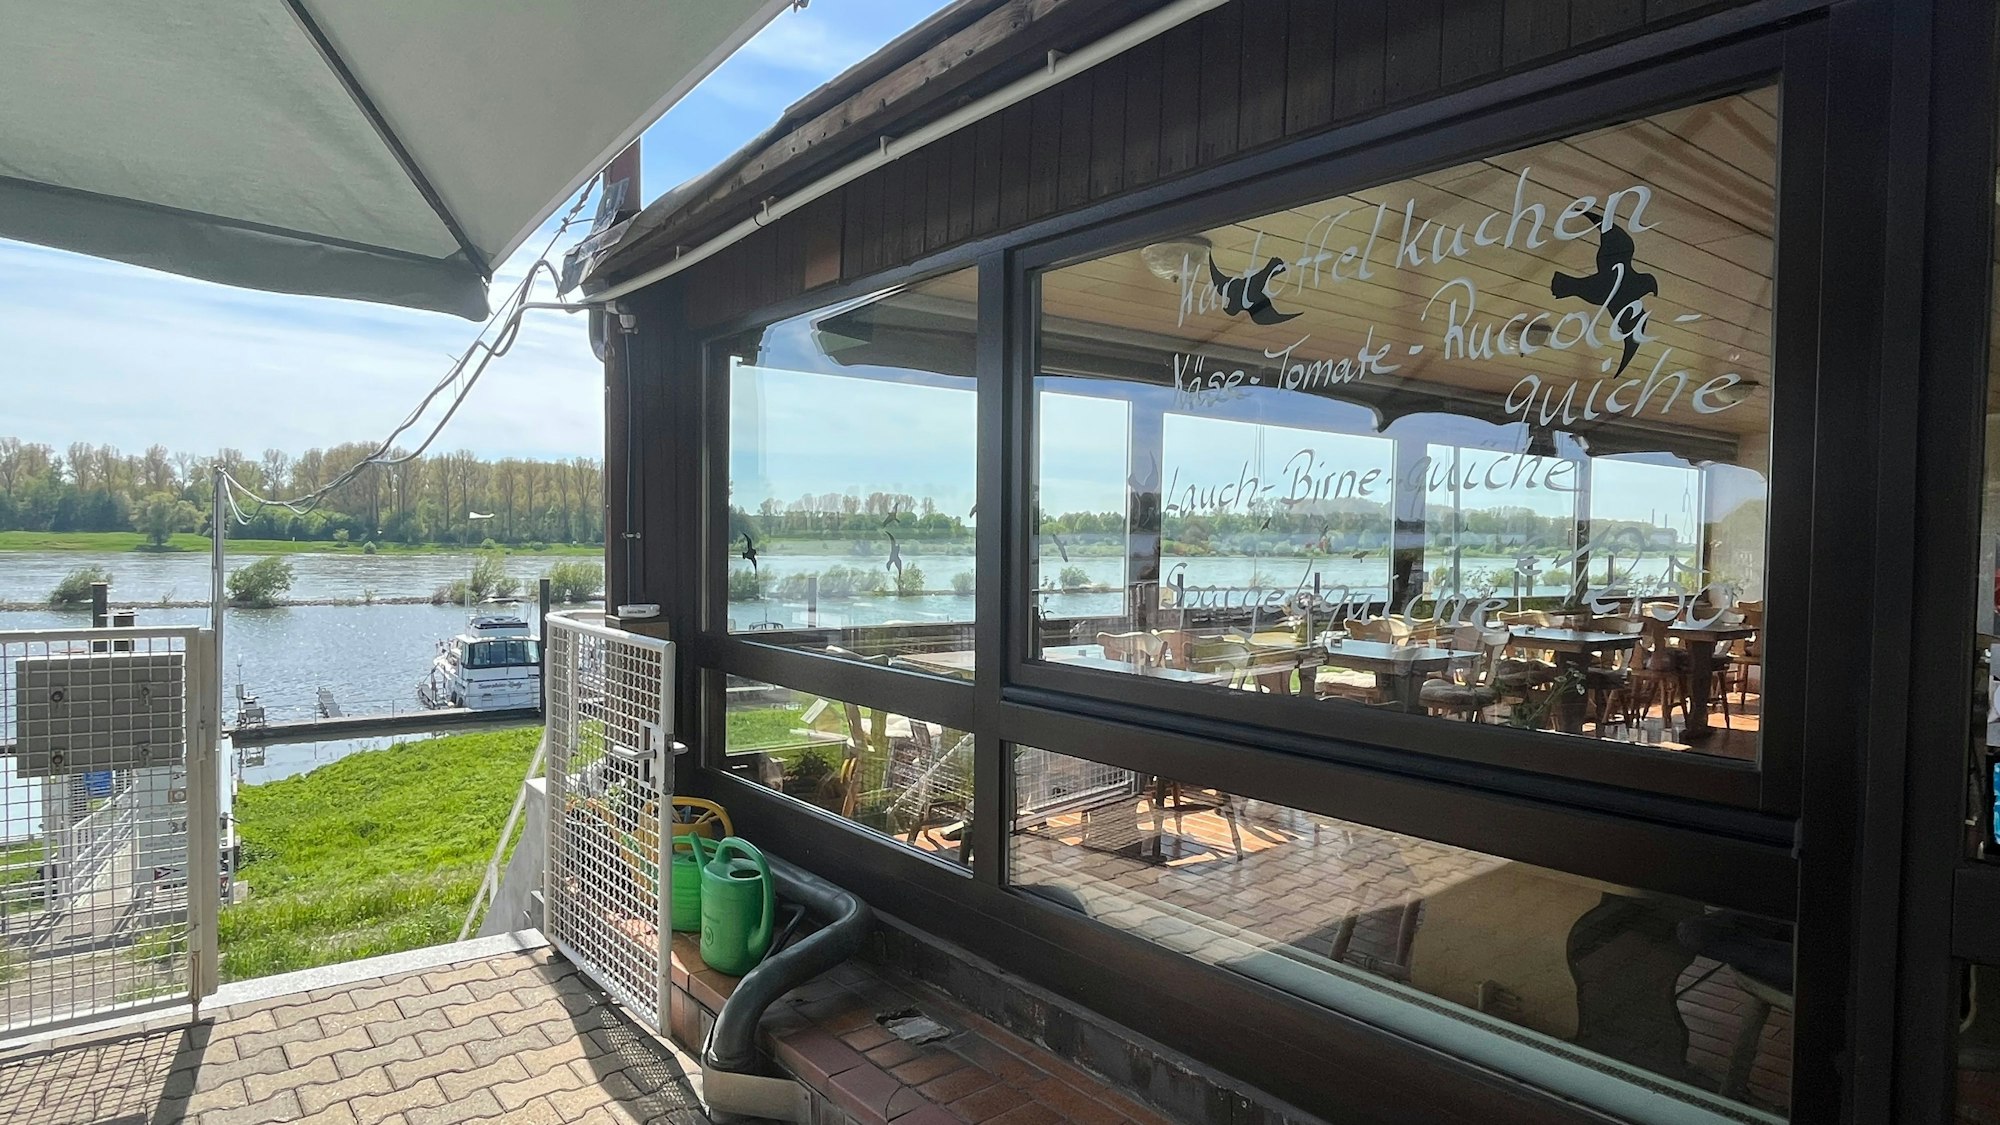 Auf der Fensterscheibe des Hafencafés in Hitdorf werden Gerichte angepriesen.